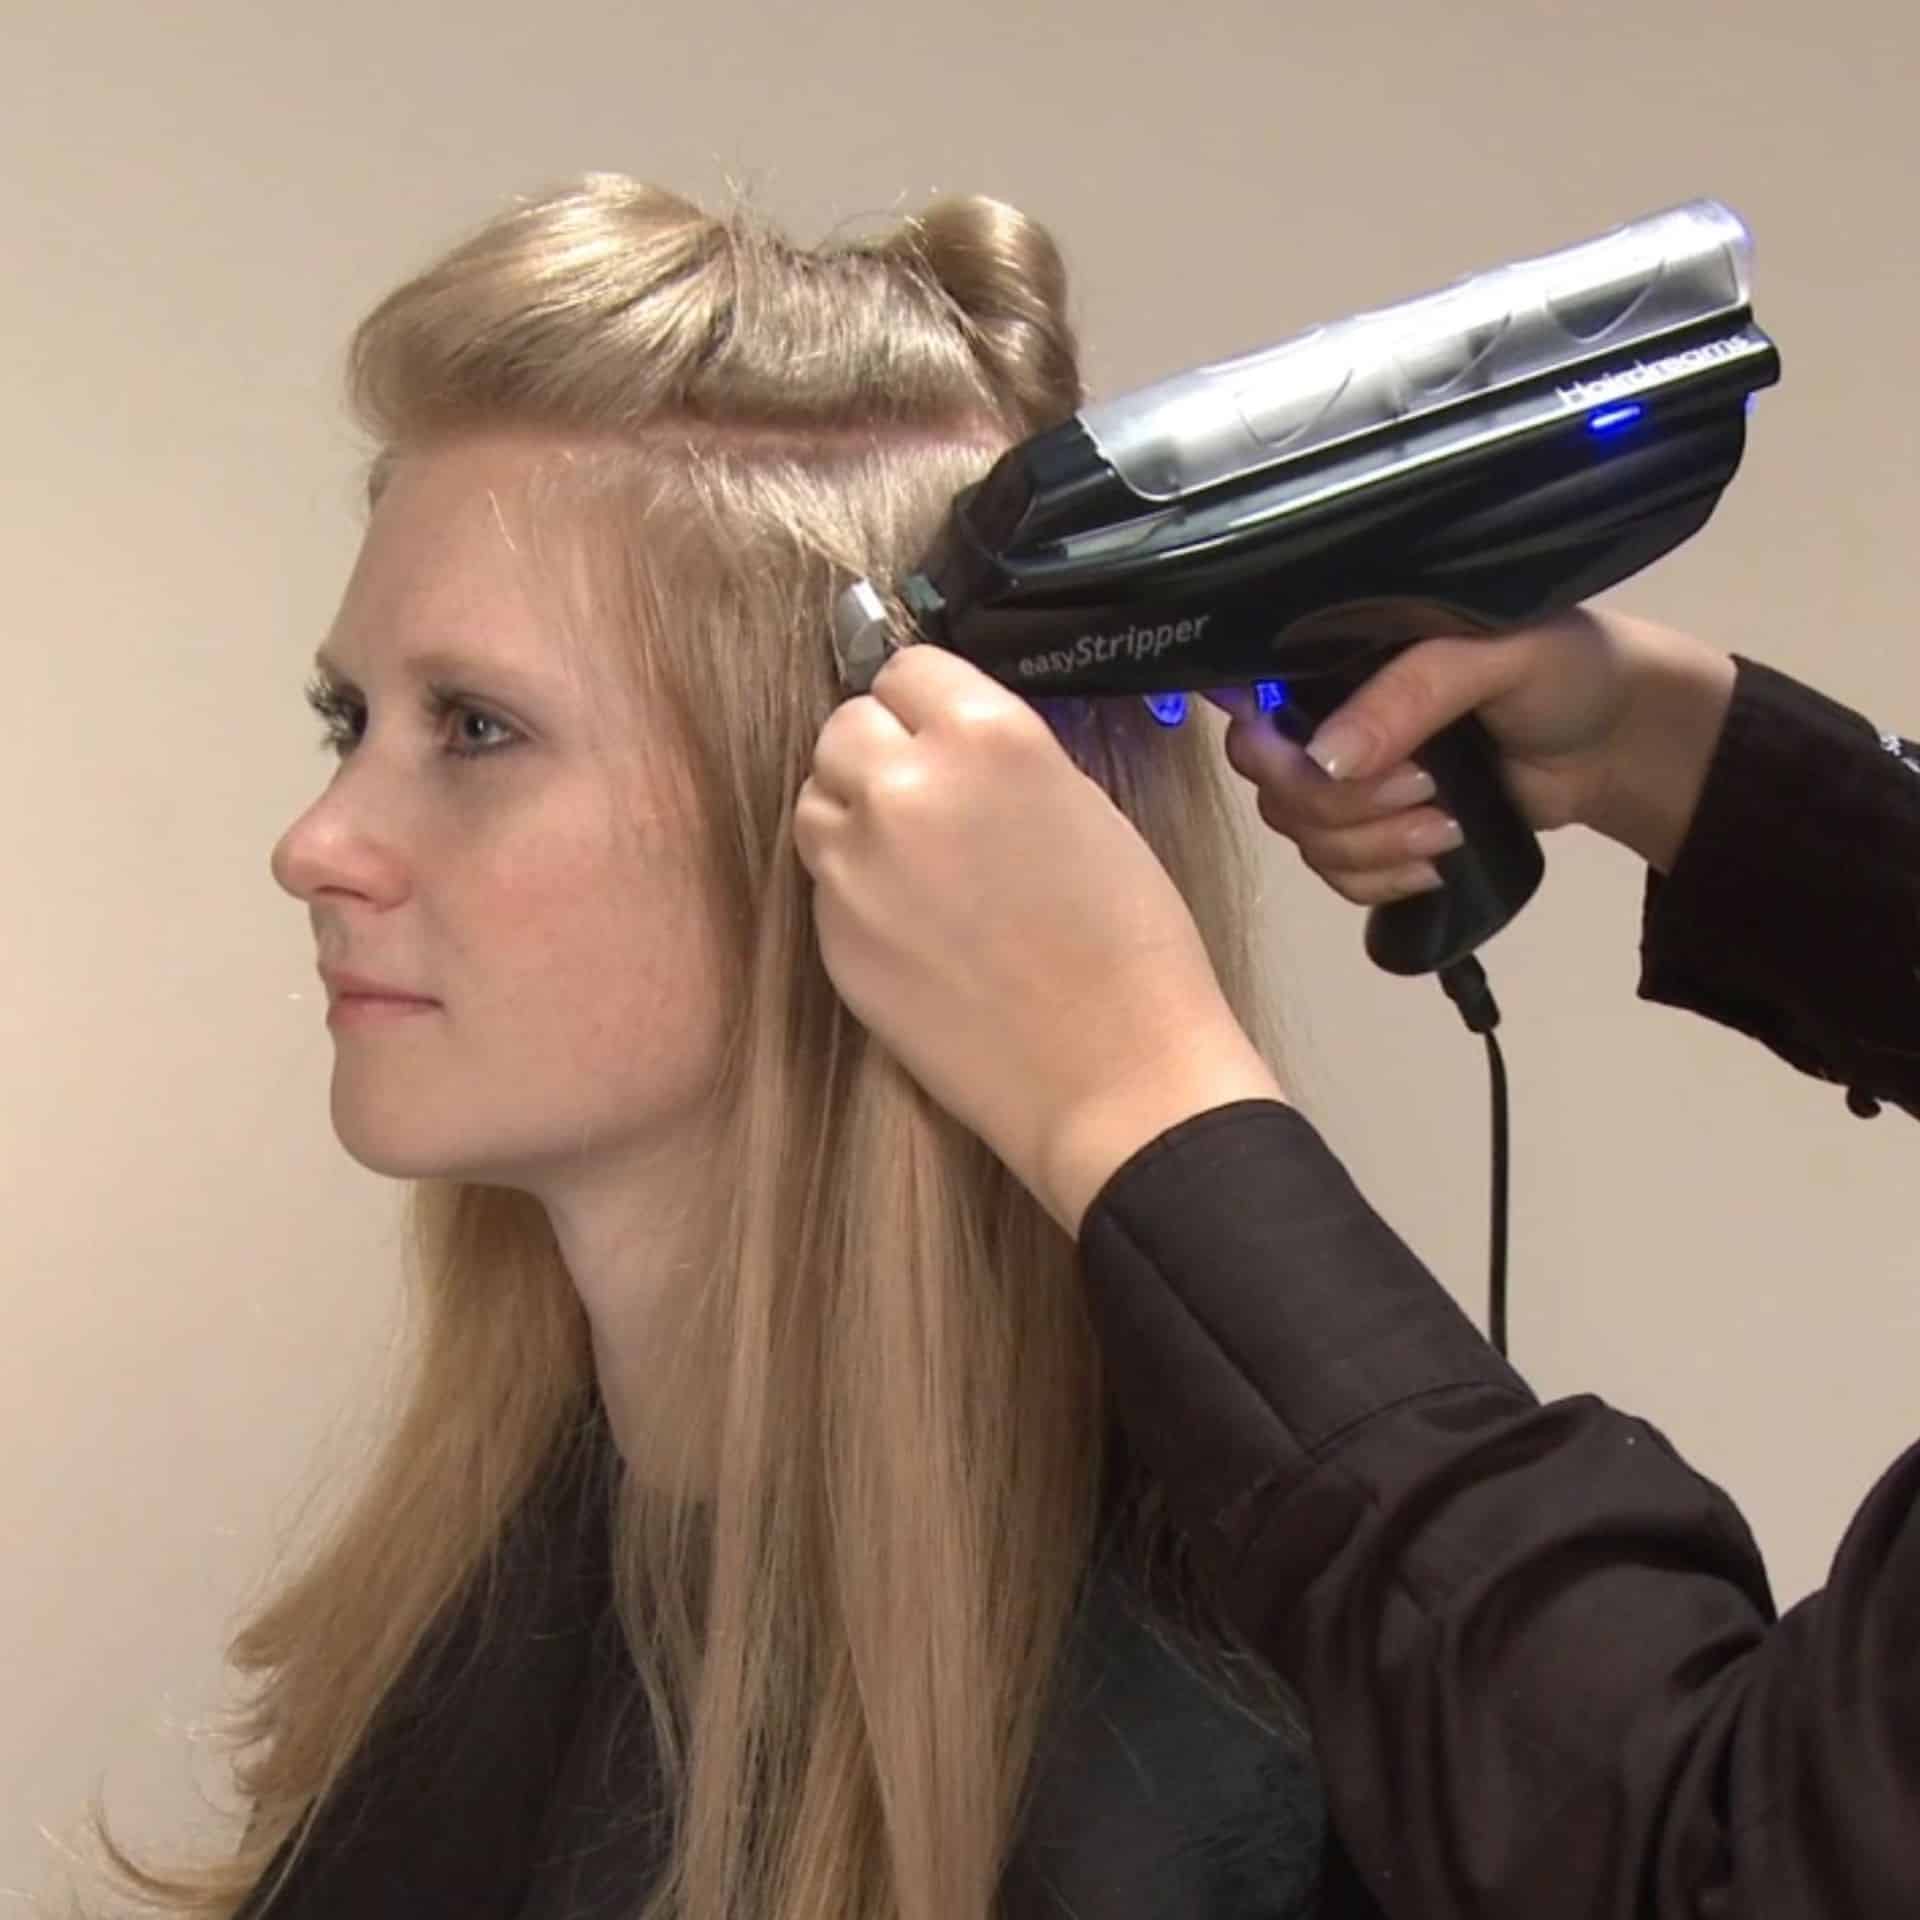 Una peluquera retira las extensiones adhesivas de una clienta con el EasyStripper de Hairdreams.